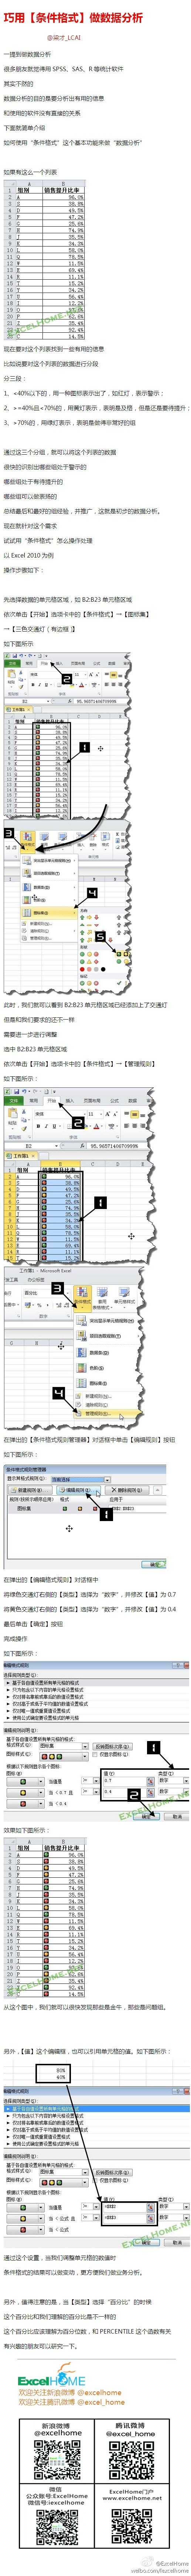 Excel巧用條件格式做數據分析 三聯